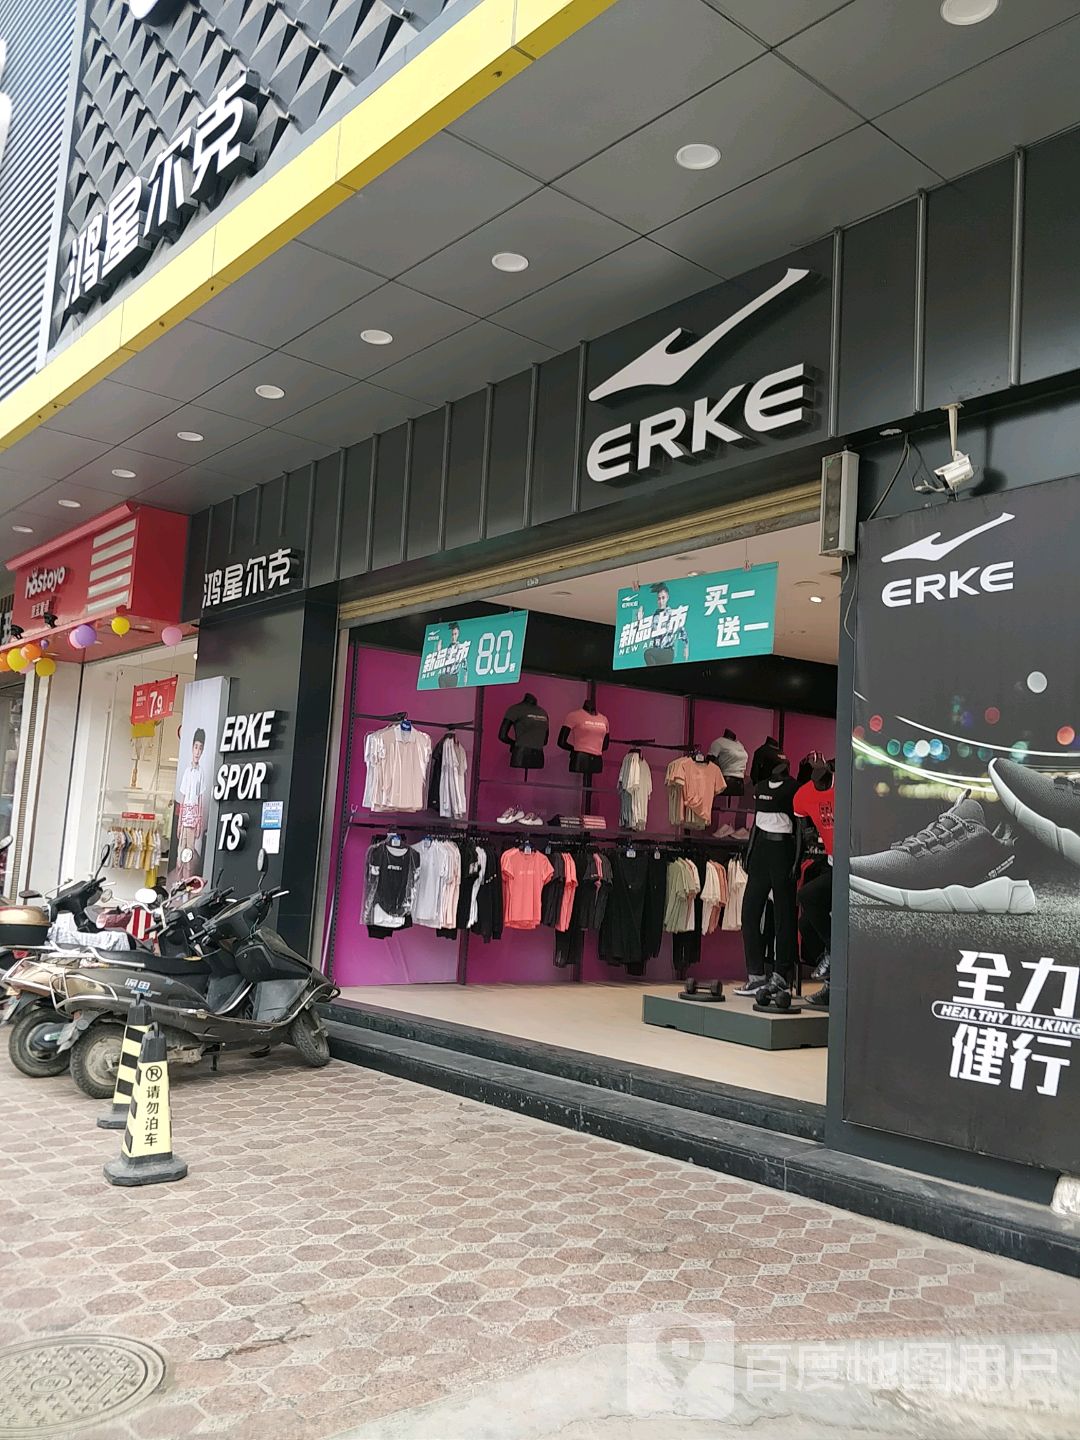 吴川市标签: 运动装 运动鞋 购物 商铺 服装店 鞋店  鸿星尔克(y962店